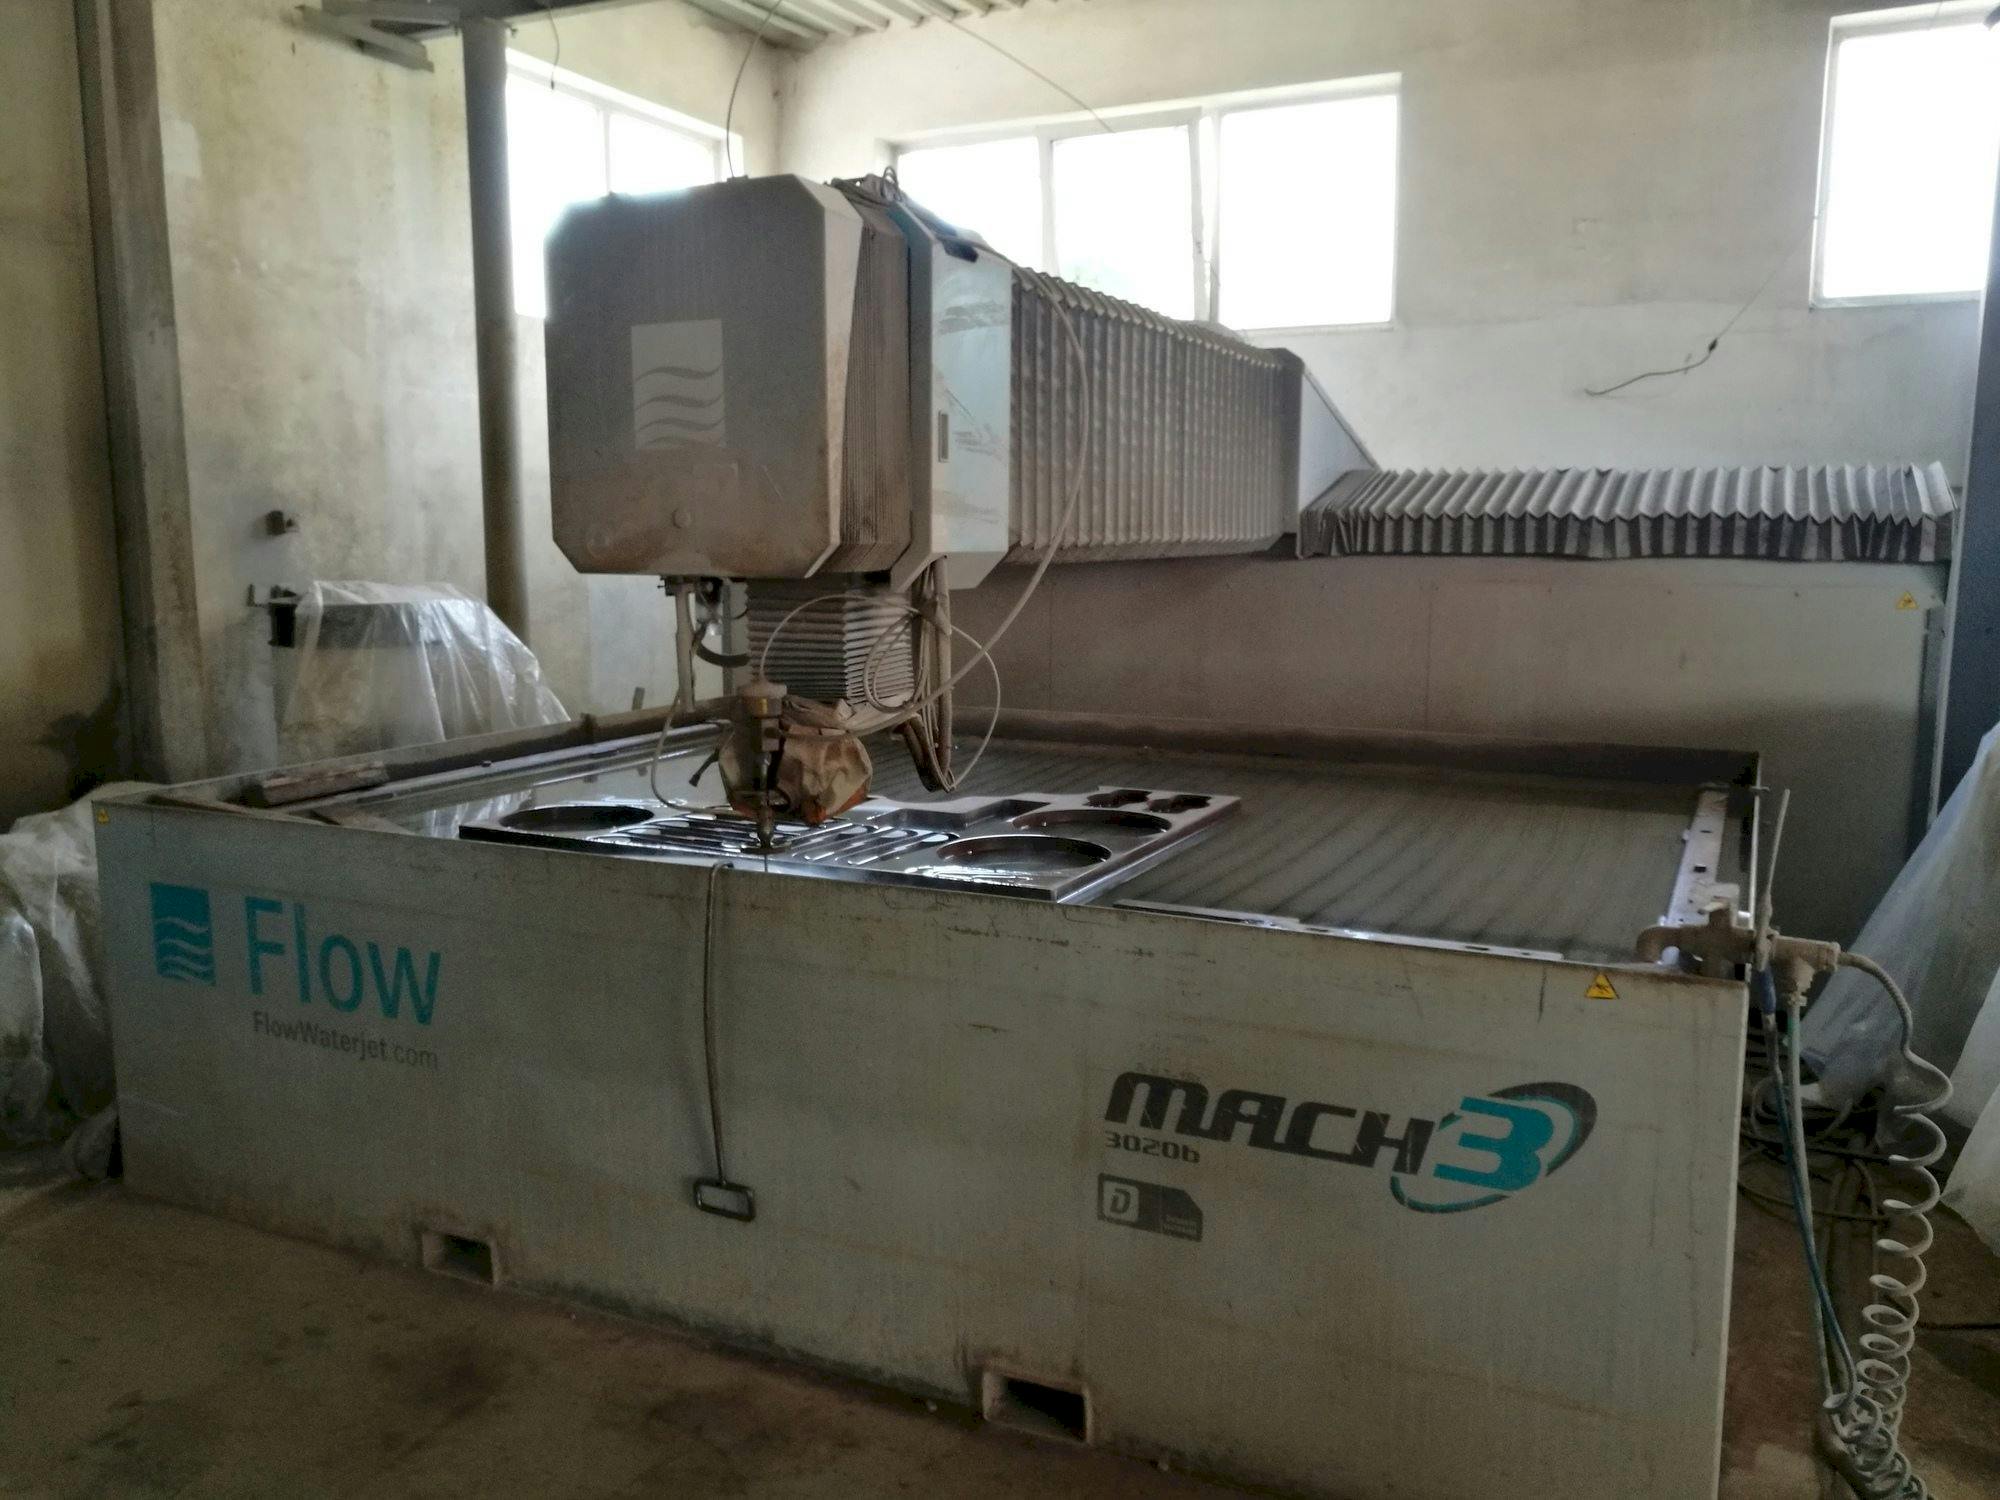 Vista frontale della macchina Flow Mach3-3020b